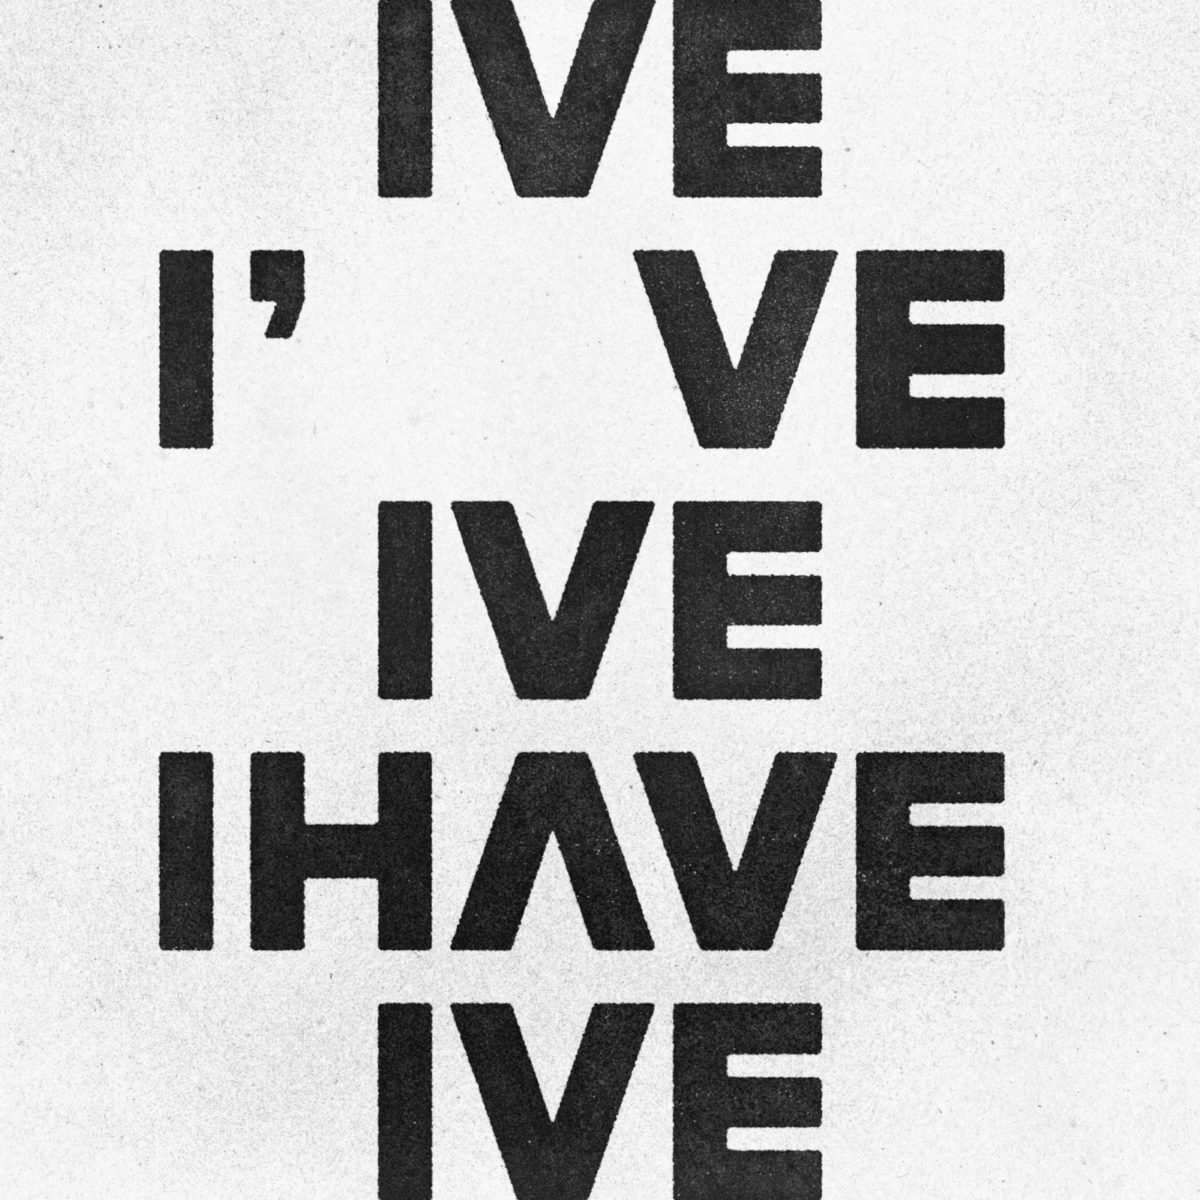 아이브 アイブ
IVE 「I've IVE」
IVE 「I AM」